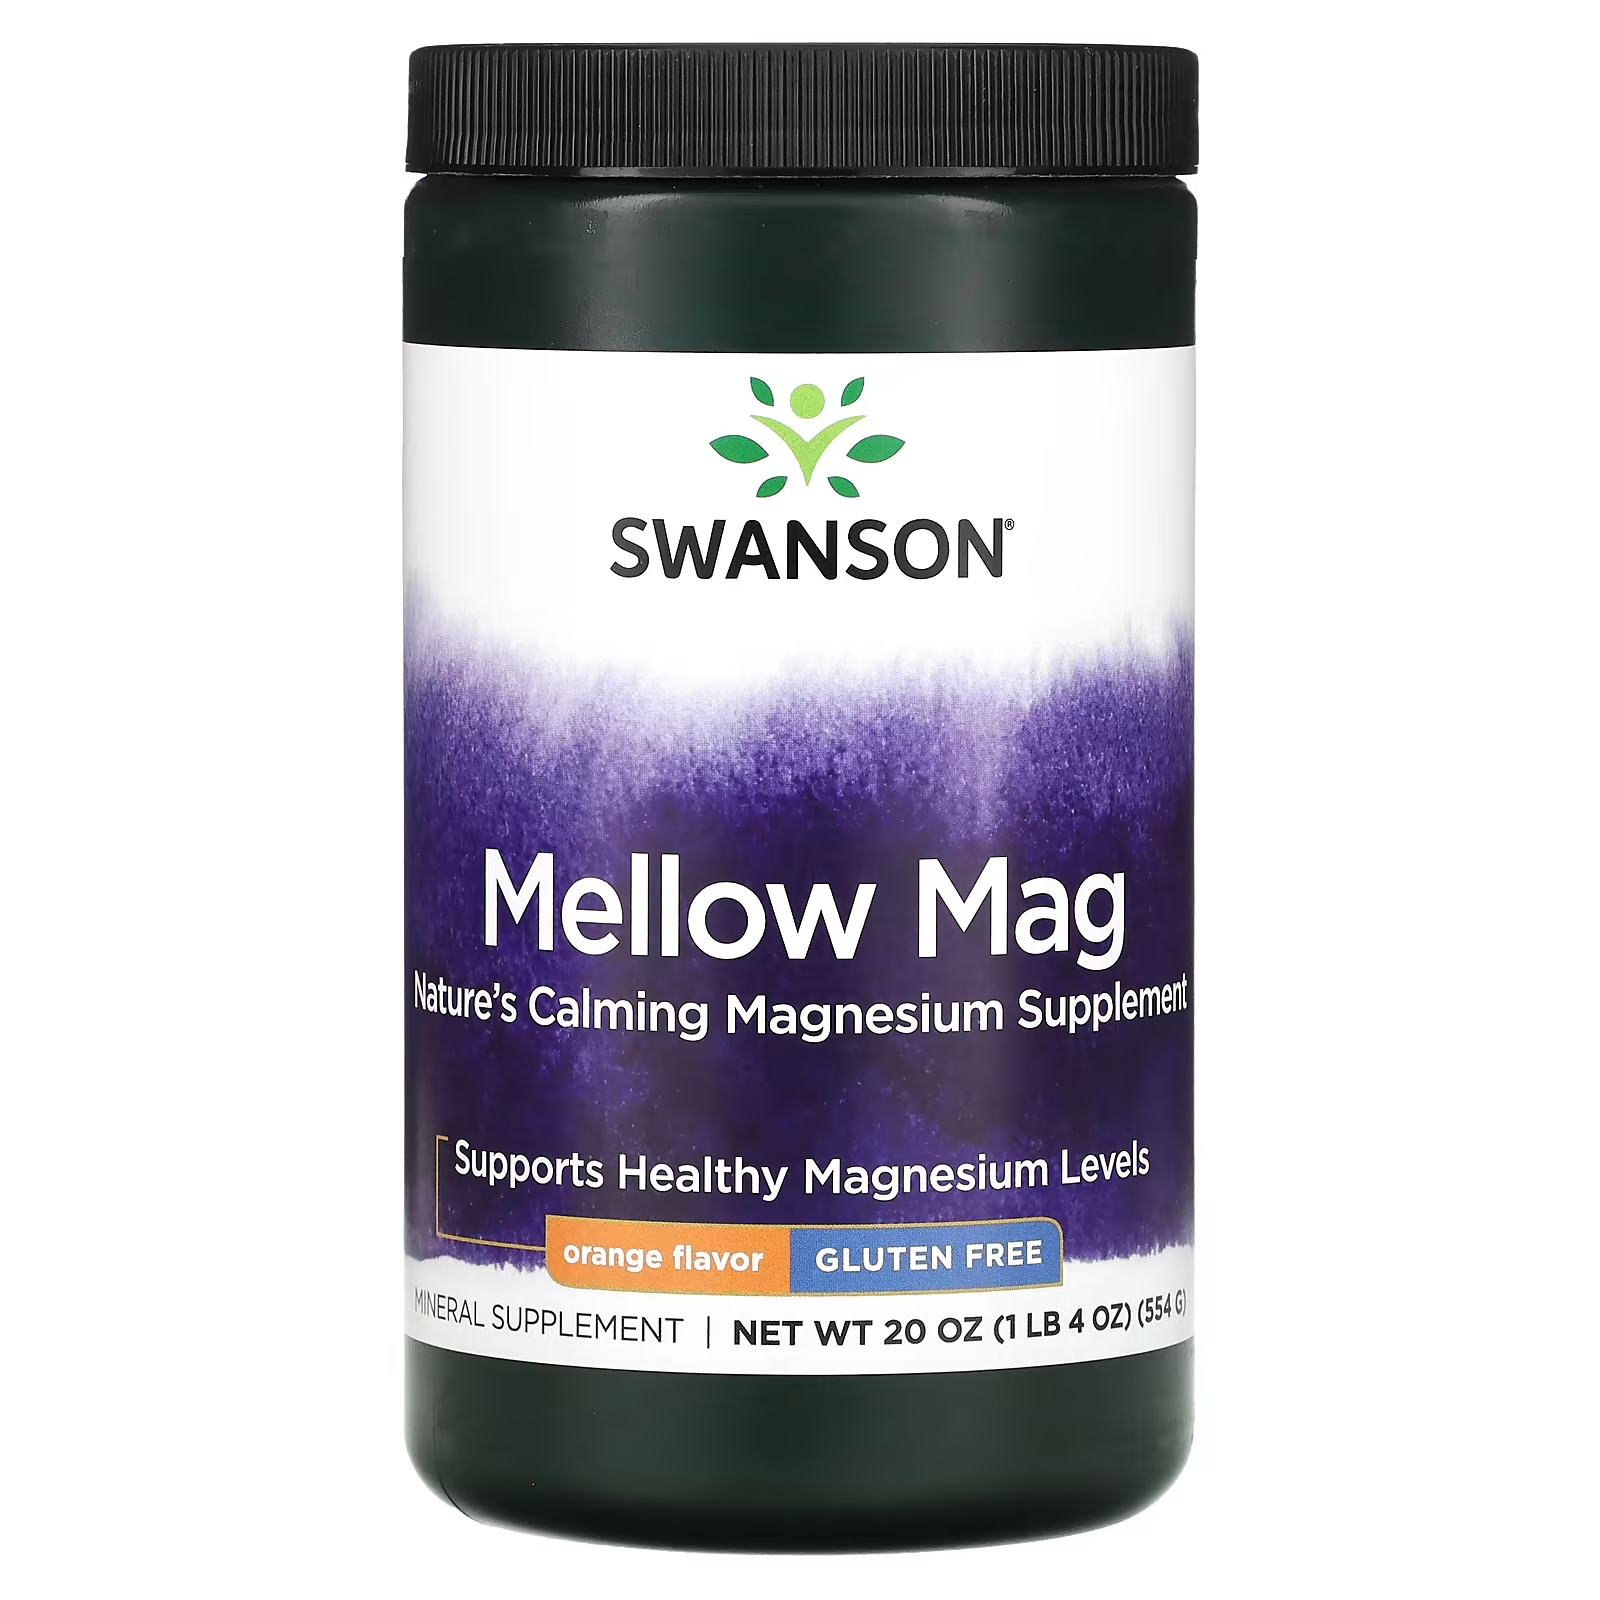 Пищевая добавка Swanson Mellow Mag со вкусом апельсина, 554 г пищевая добавка swanson mellow mag со вкусом малинового лимонада 554 г